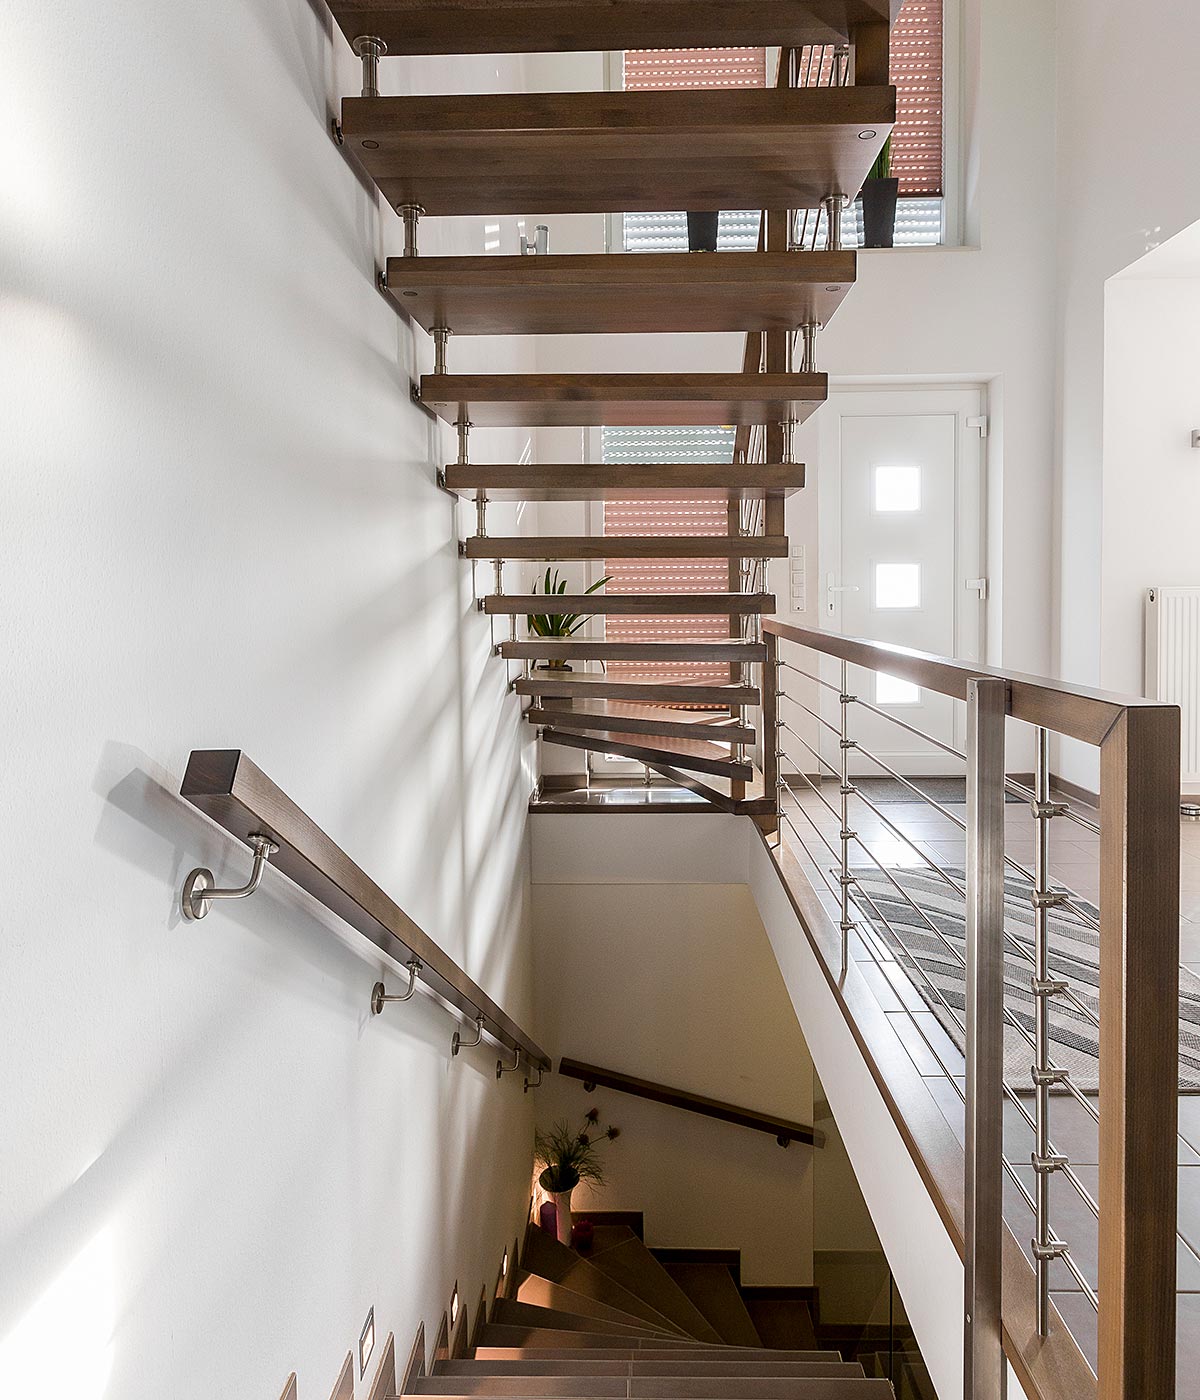 Freitragende Treppen | Carstens Tischlerei, Hude